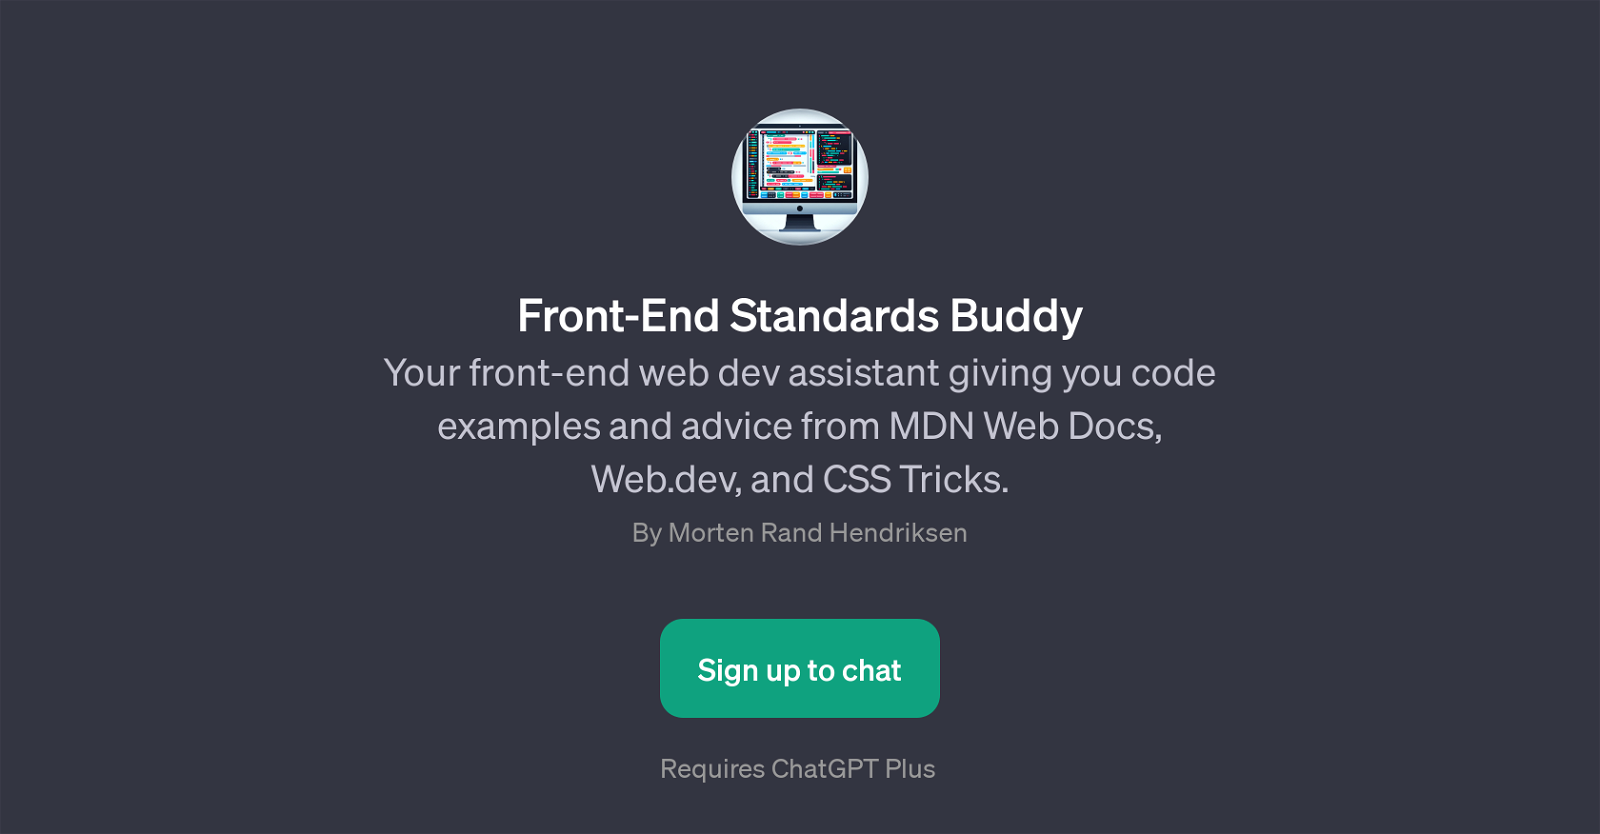 Front-End Standards Buddy website